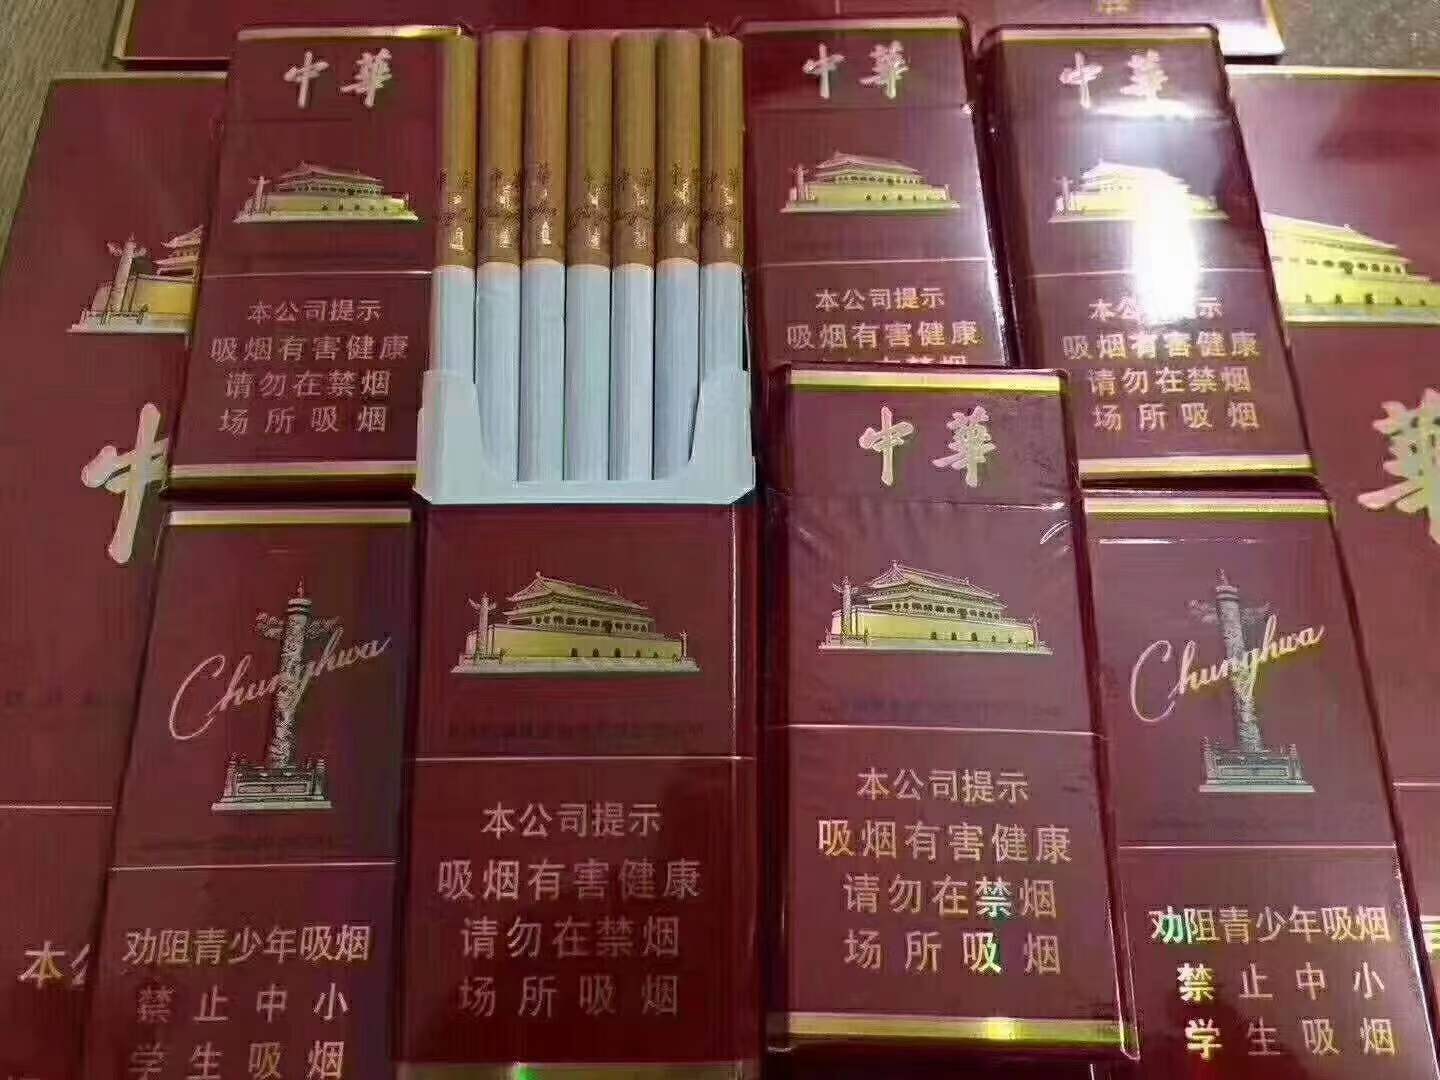 正品外烟代购网，越南香烟图片及价格-外国香烟批发代购